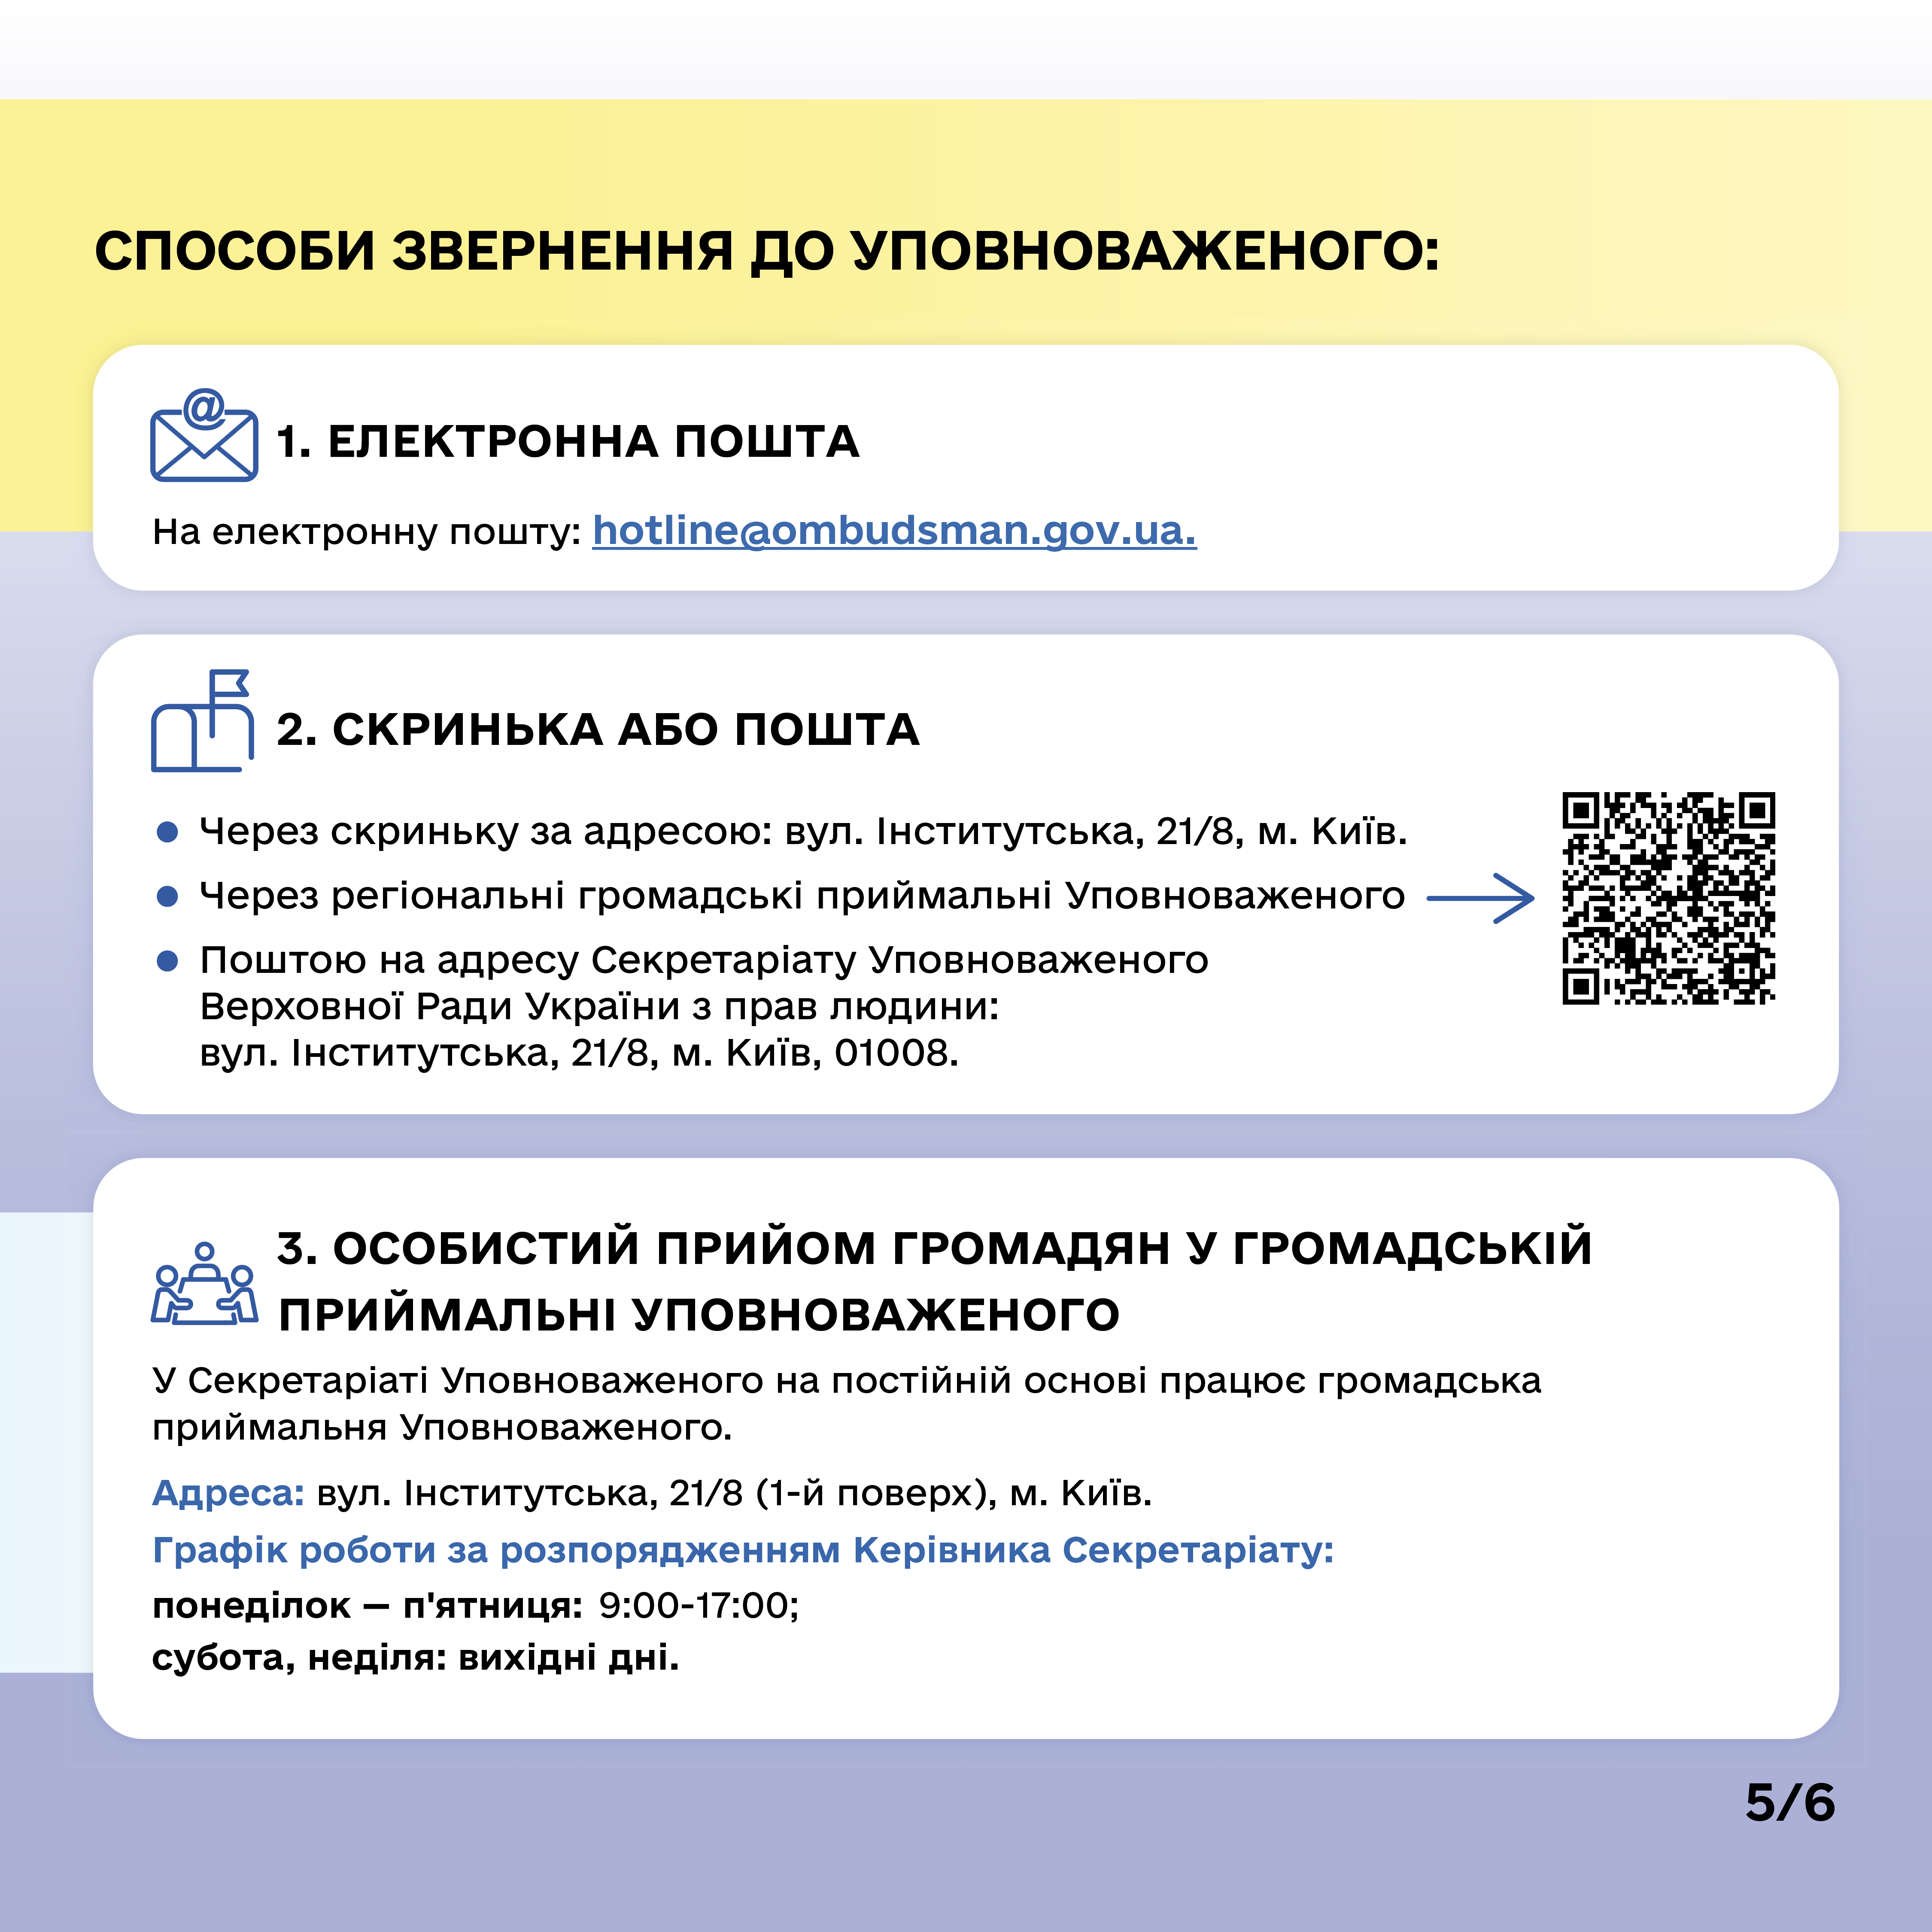 корисна інформація щодо діяльності уповноваженого верховної ради україни з прав людини